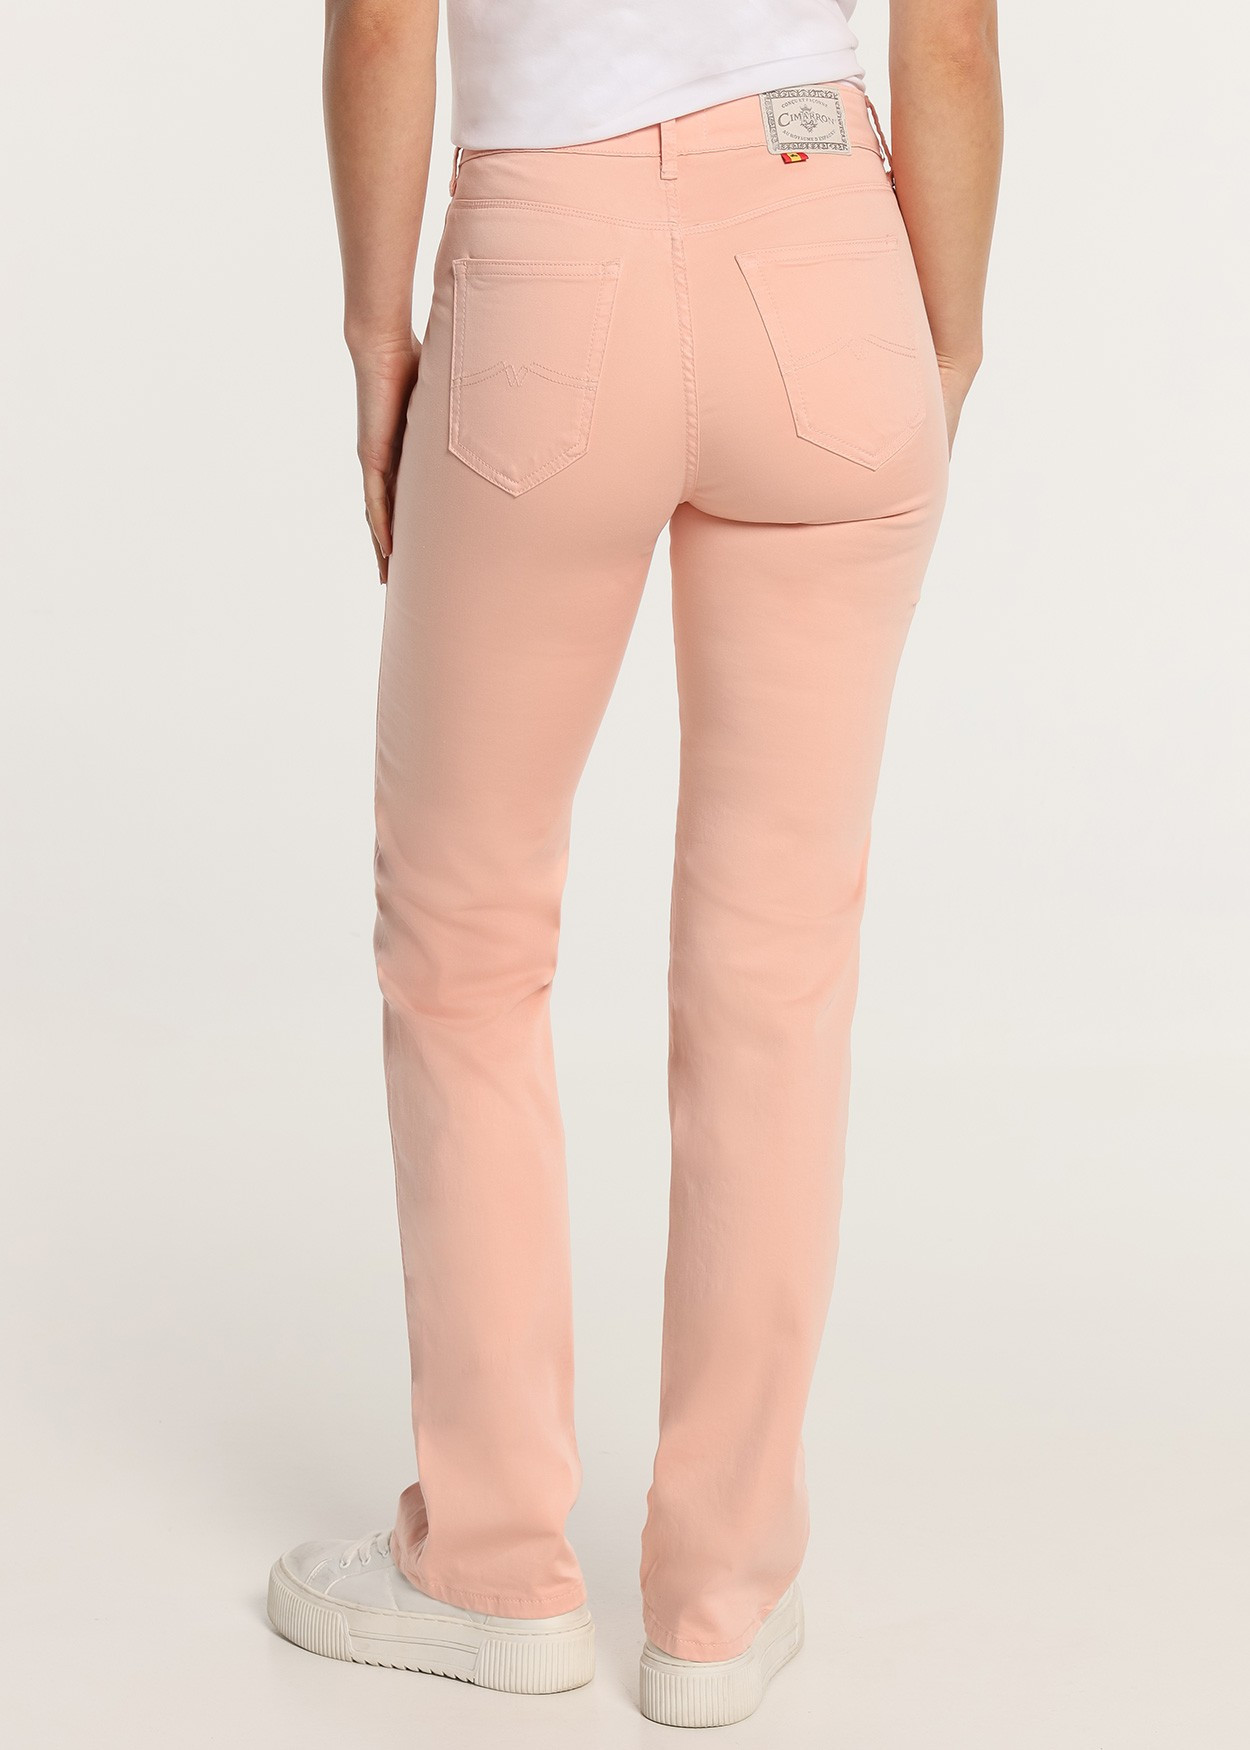 CLAUDIA-NECTAR - Pantalon Couleur | Droit - Elastique Satin Coupe Courte | Tailles Pouces Cimarron